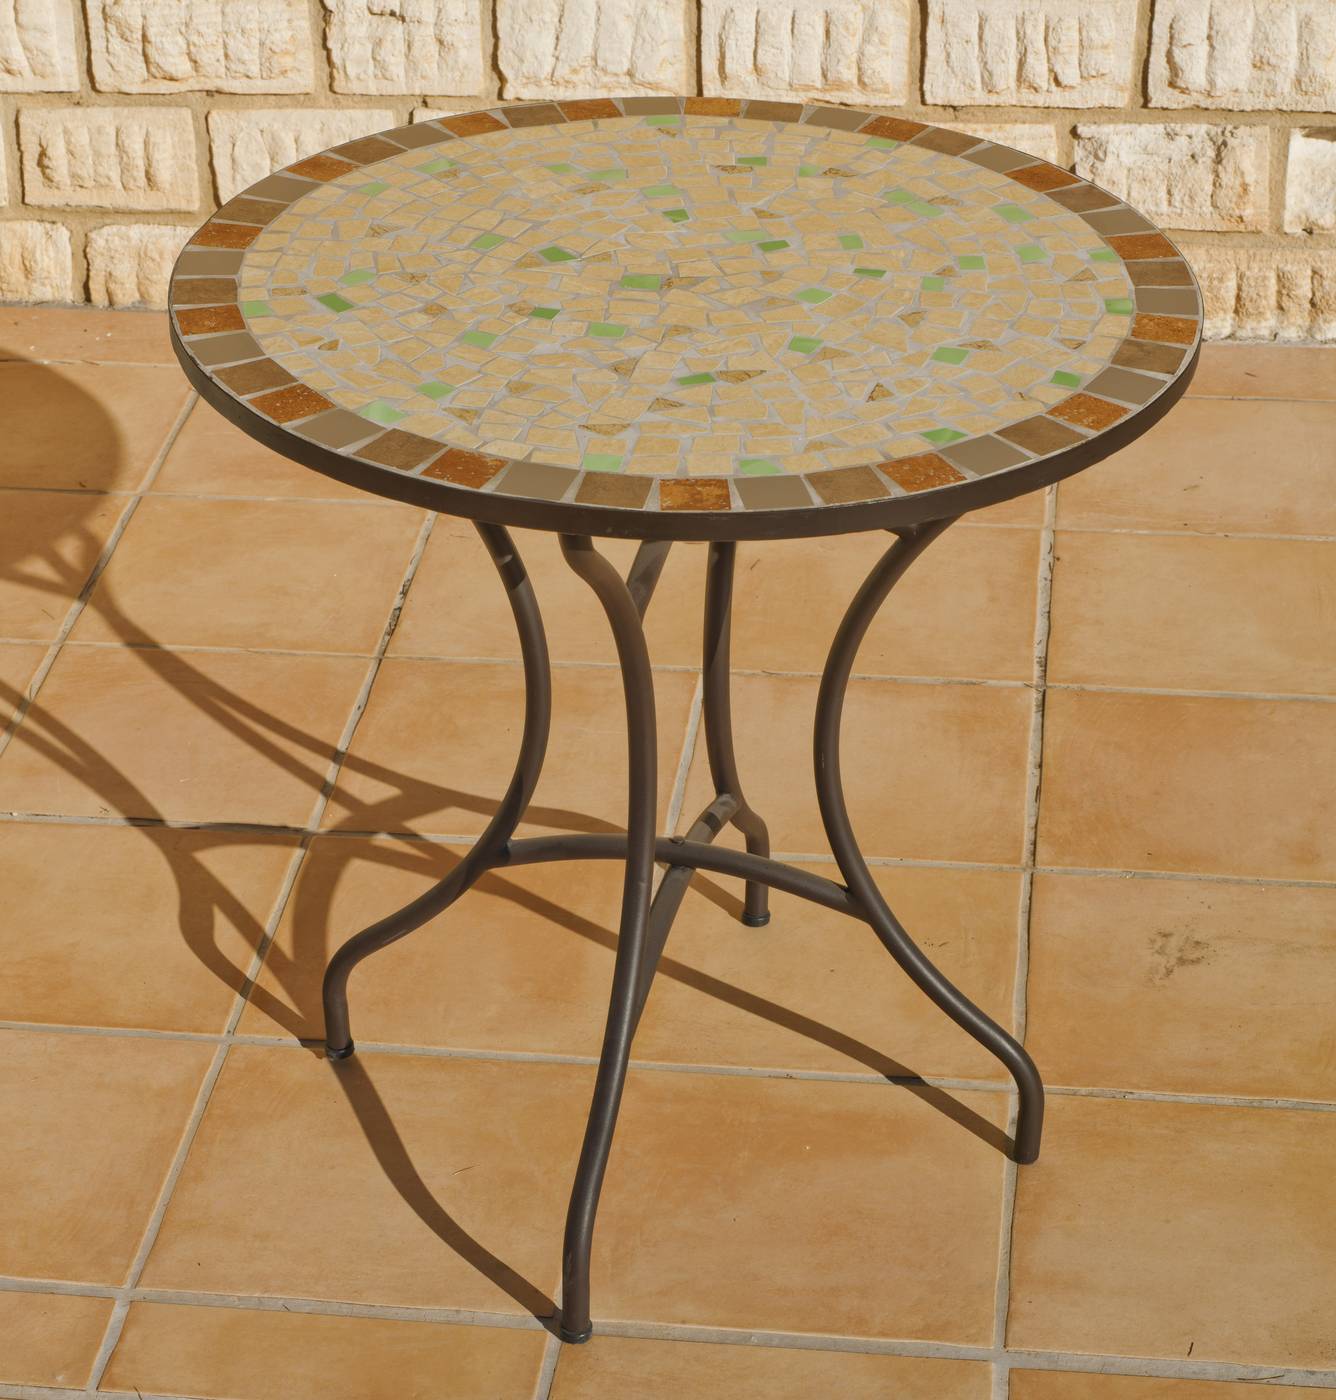 Set Mosaico Inma/Brasil-60/4 - Mesa redonda de forja color bronce, con tablero mosaico de 60 cm, + 4 sillones apilables de ratán sintético